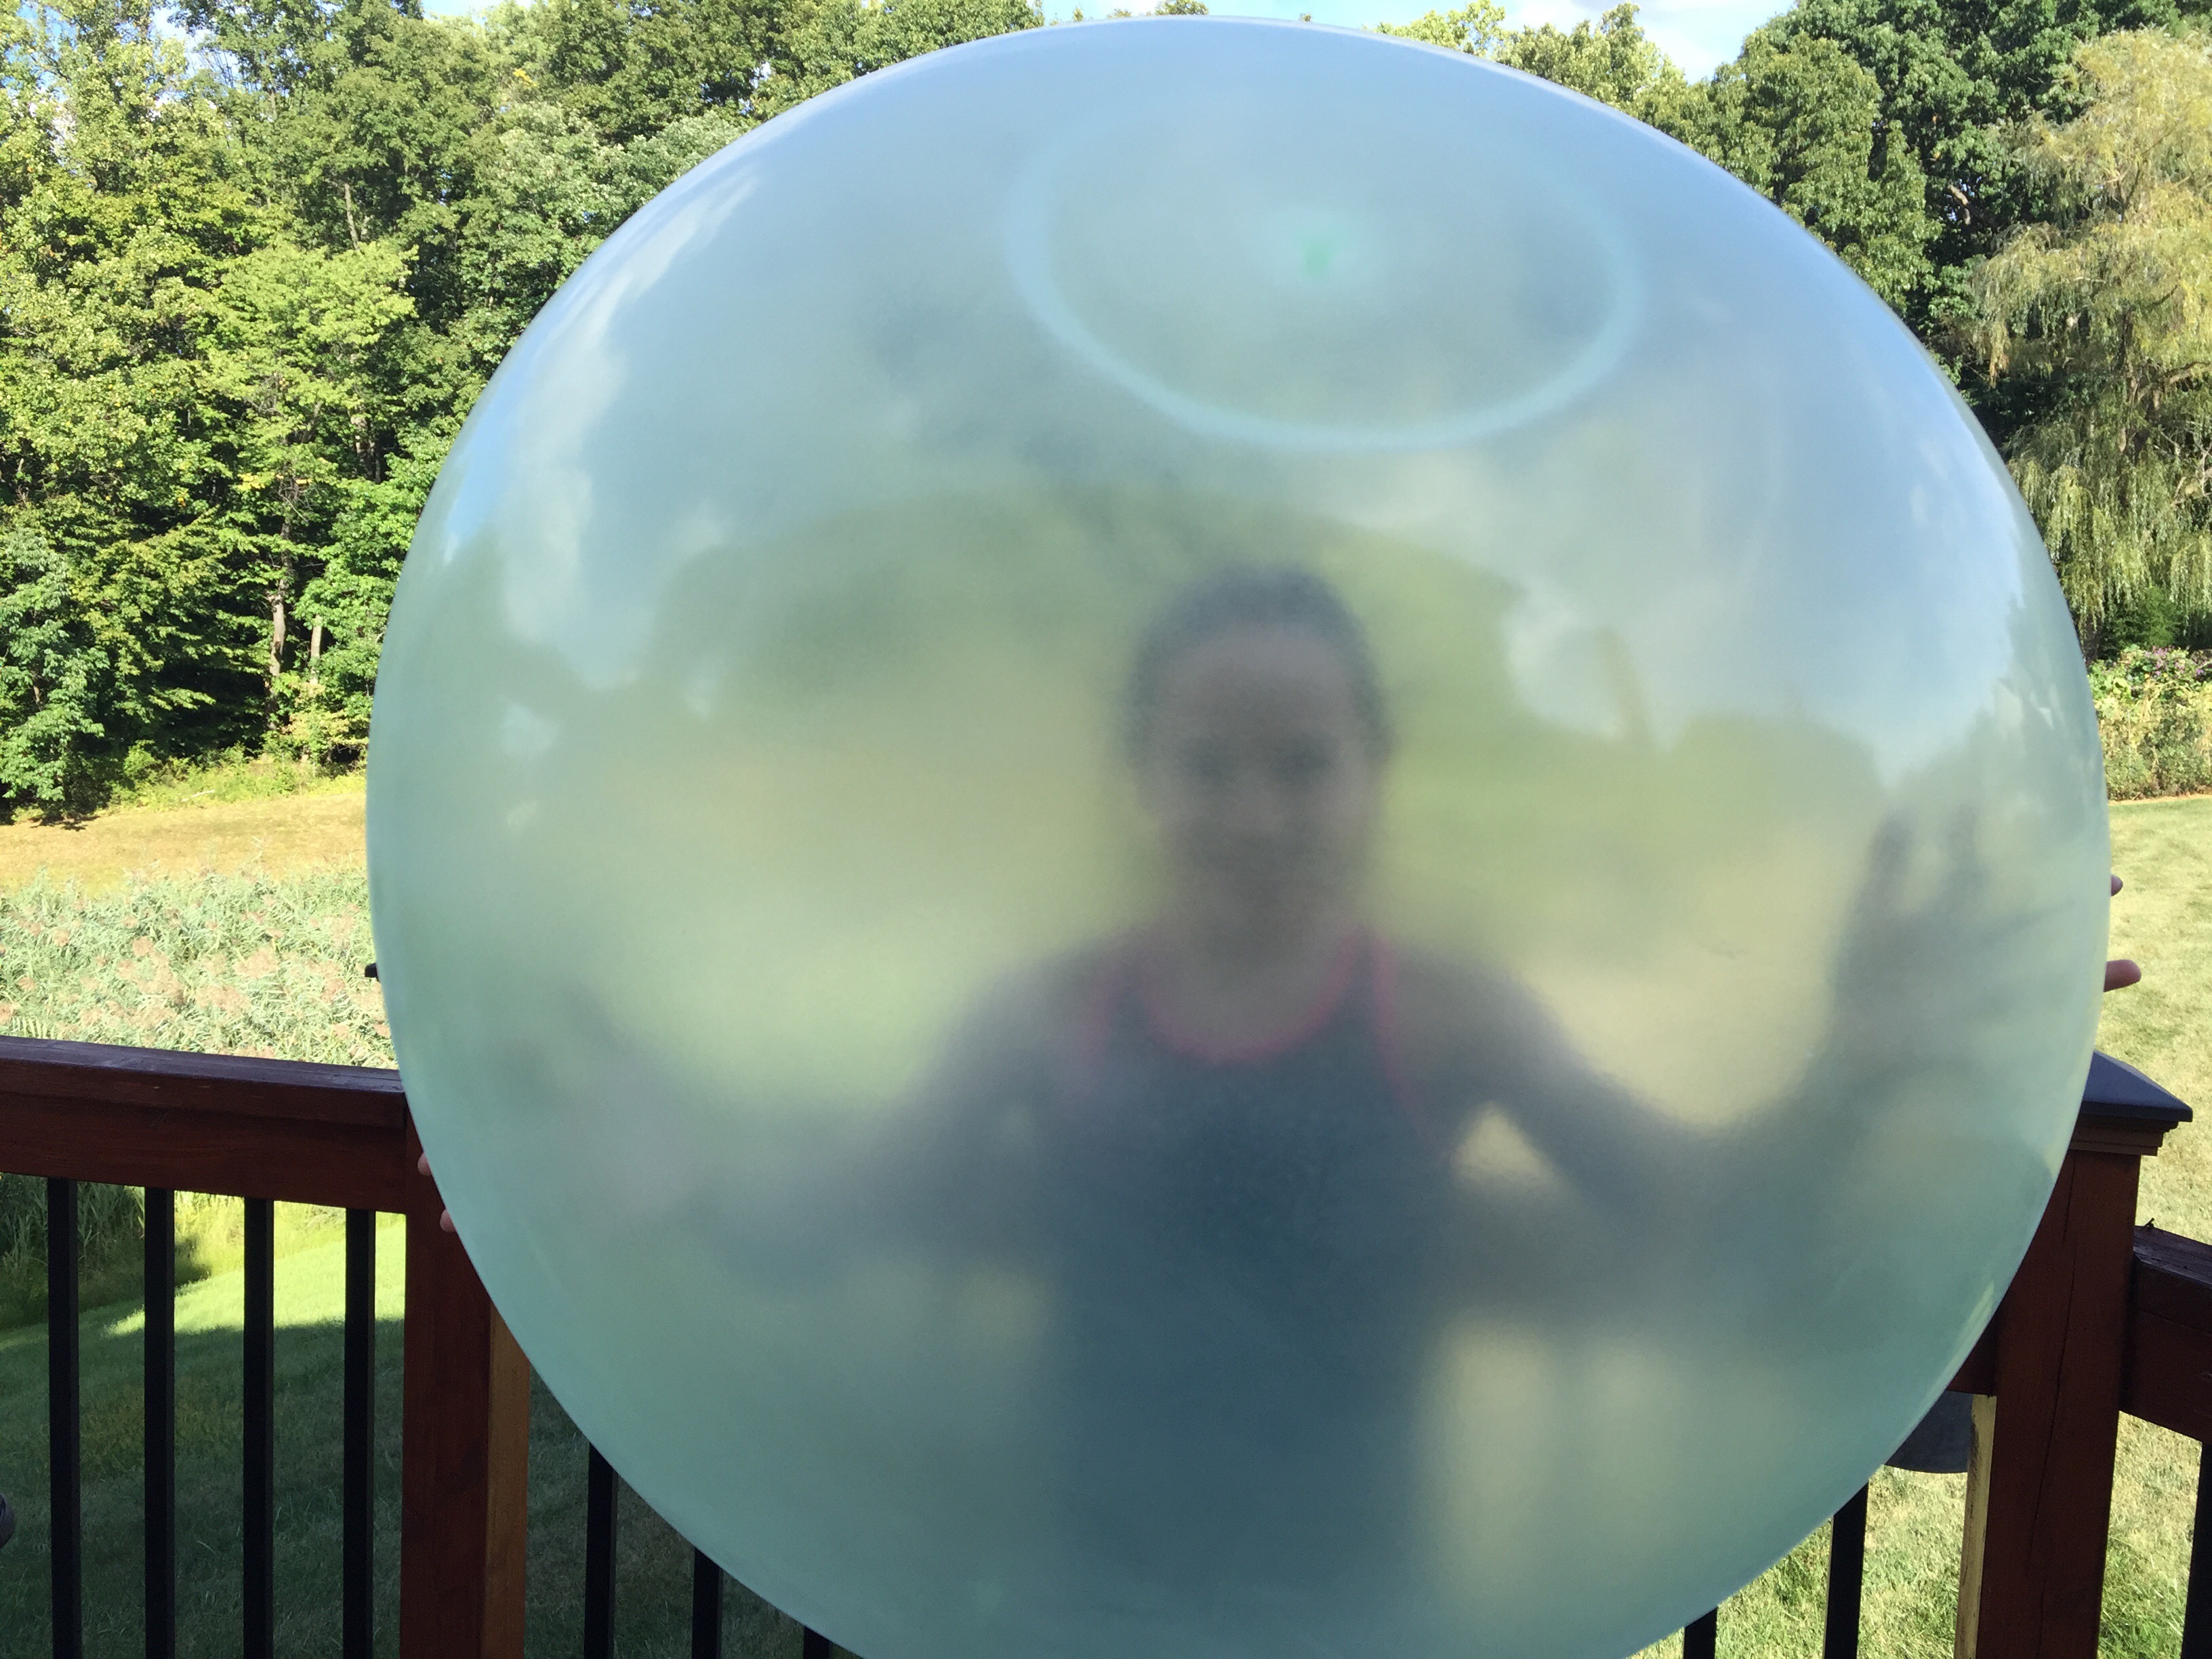 wubble bubble